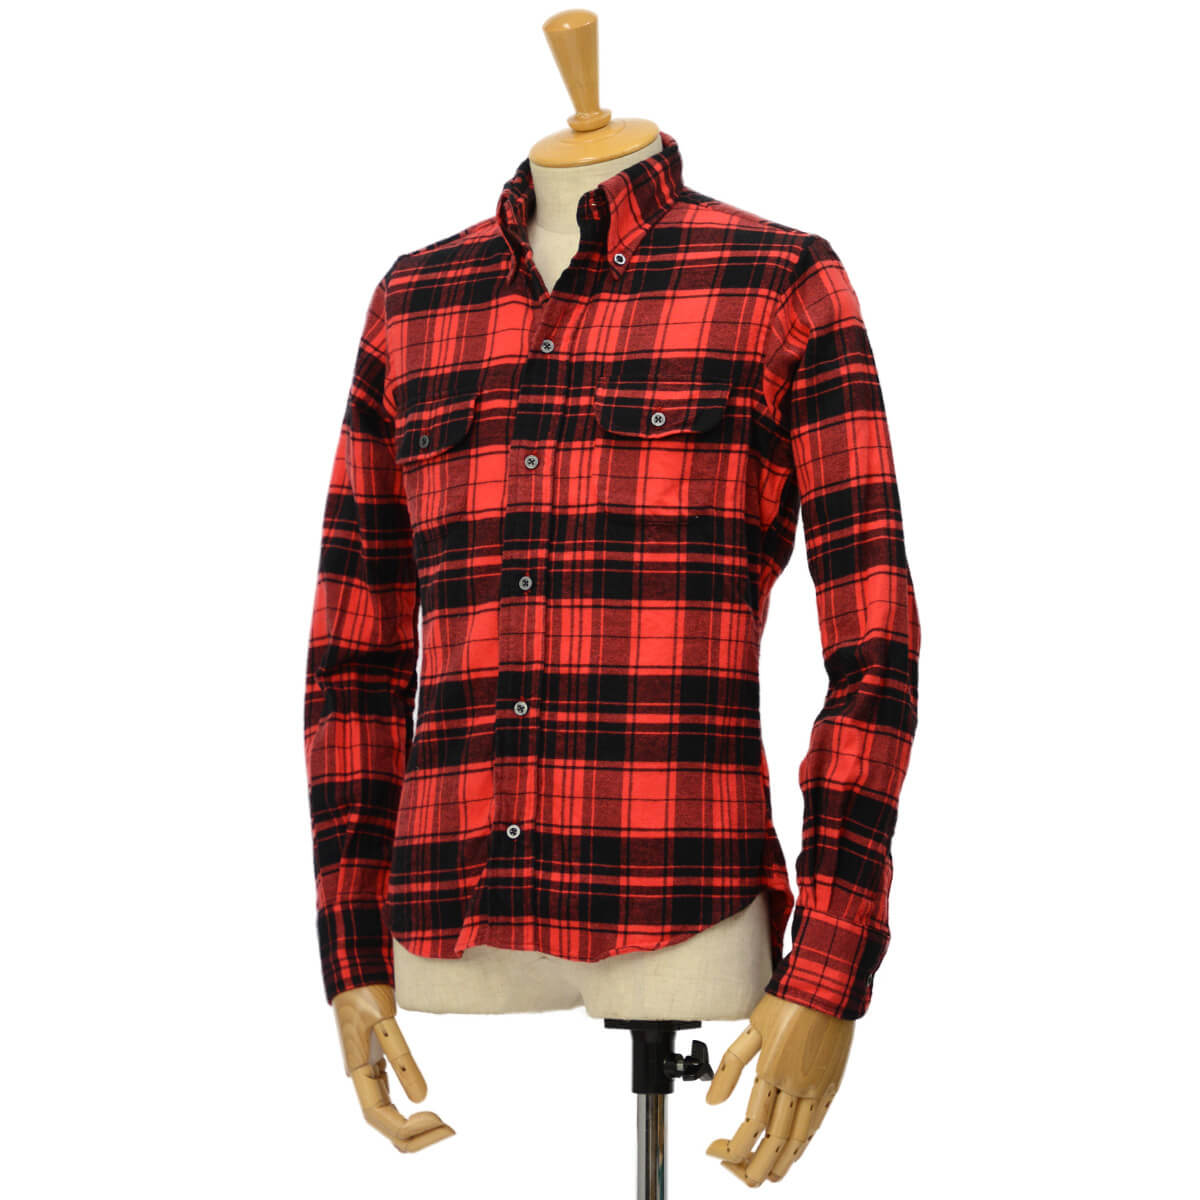 赤チェックシャツの着こなし術とは 注目のメンズコーデ おすすめブランドを紹介 メンズファッションメディア Govgov 男前研究所